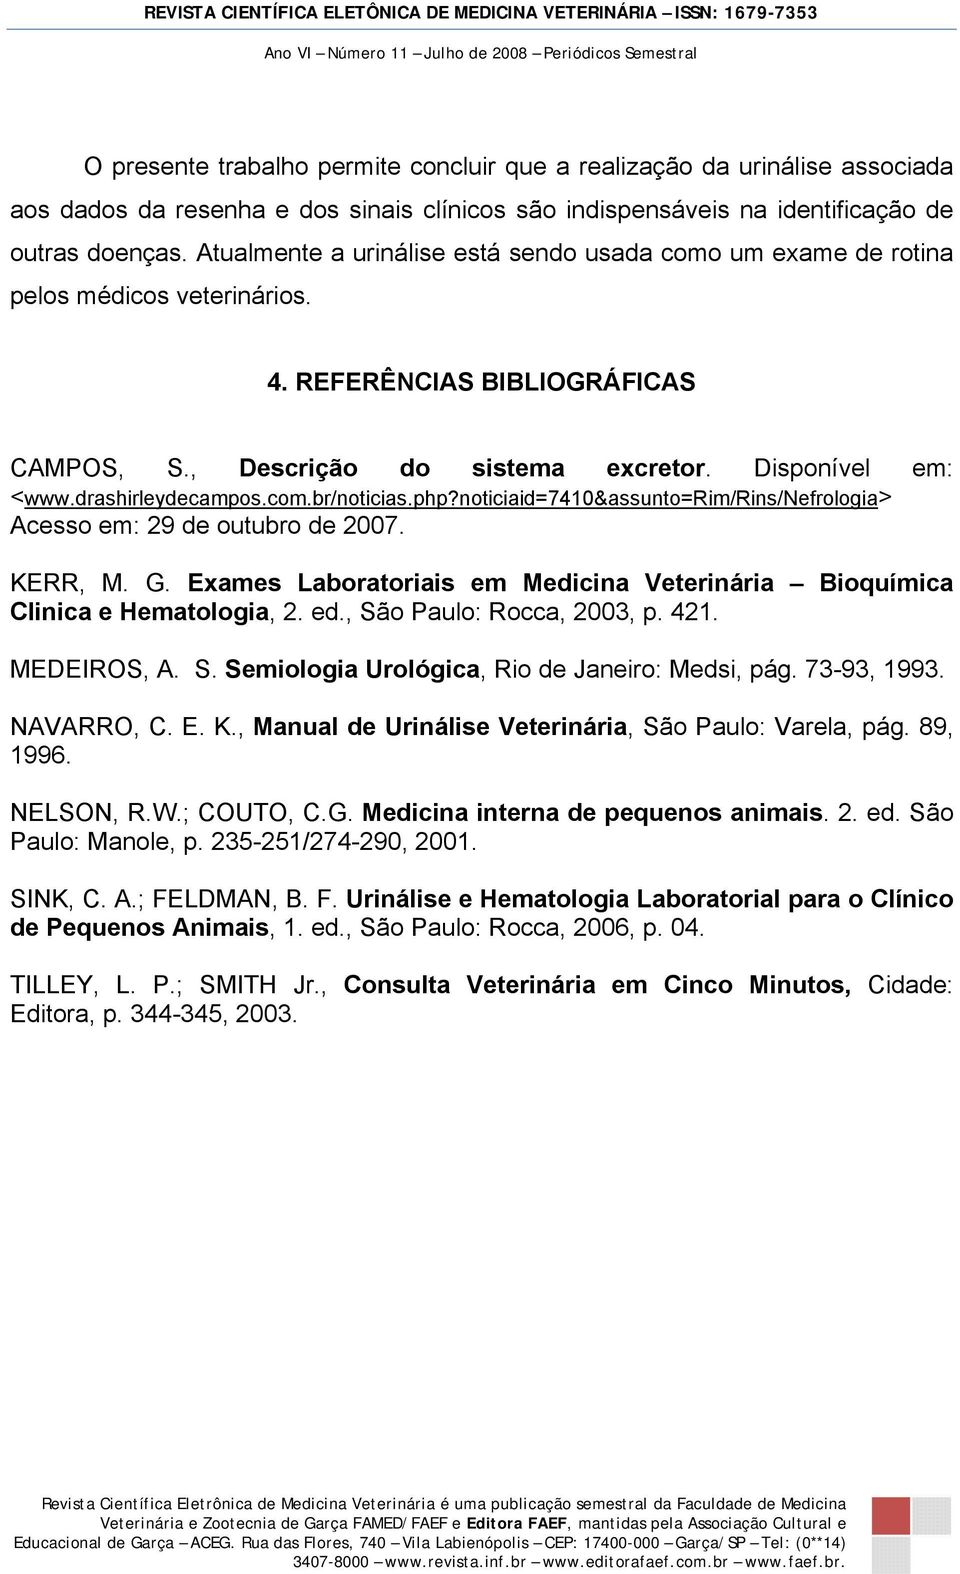 drashirleydecampos.com.br/noticias.php?noticiaid=7410&assunto=rim/rins/nefrologia> Acesso em: 29 de outubro de 2007. KERR, M. G.